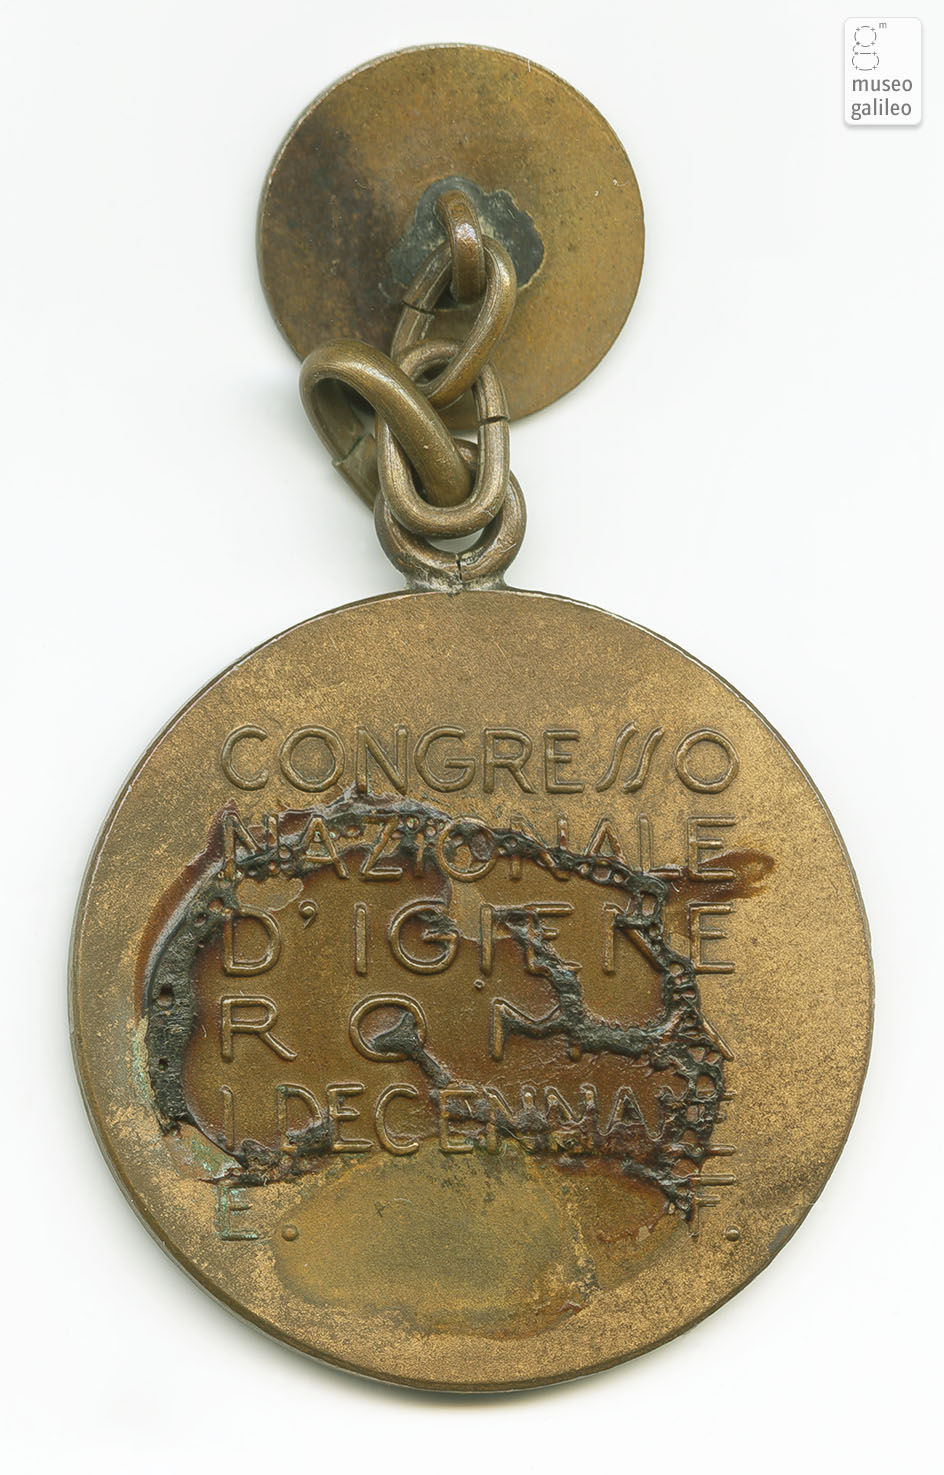 Congresso Nazionale d'Igiene (Roma, 1932) - reverse